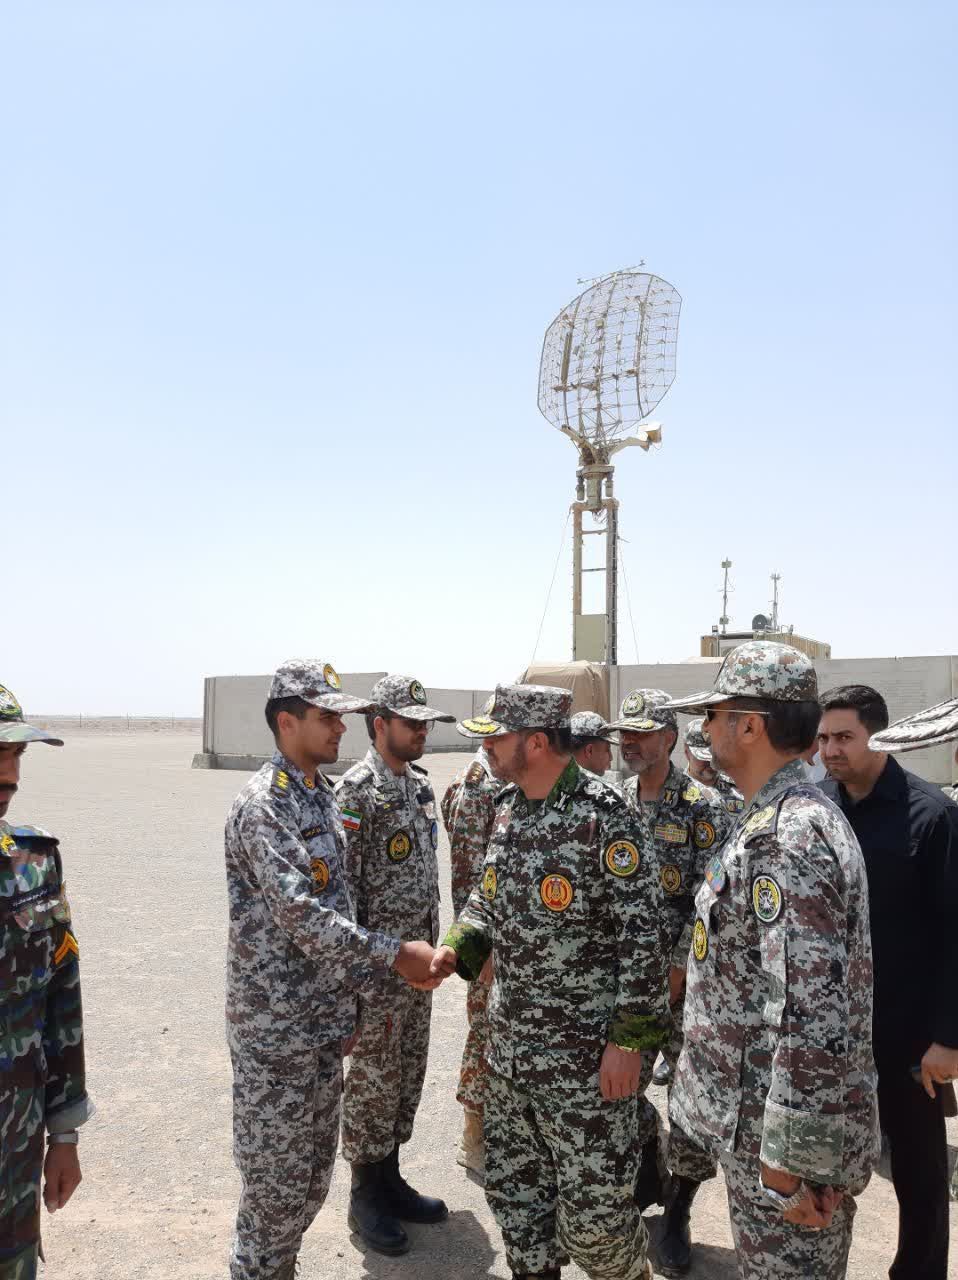 فرمانده نیروی پدافند هوایی از مواضع پدافندی منطقه پدافند هوایی مرکزی بازدید کرد